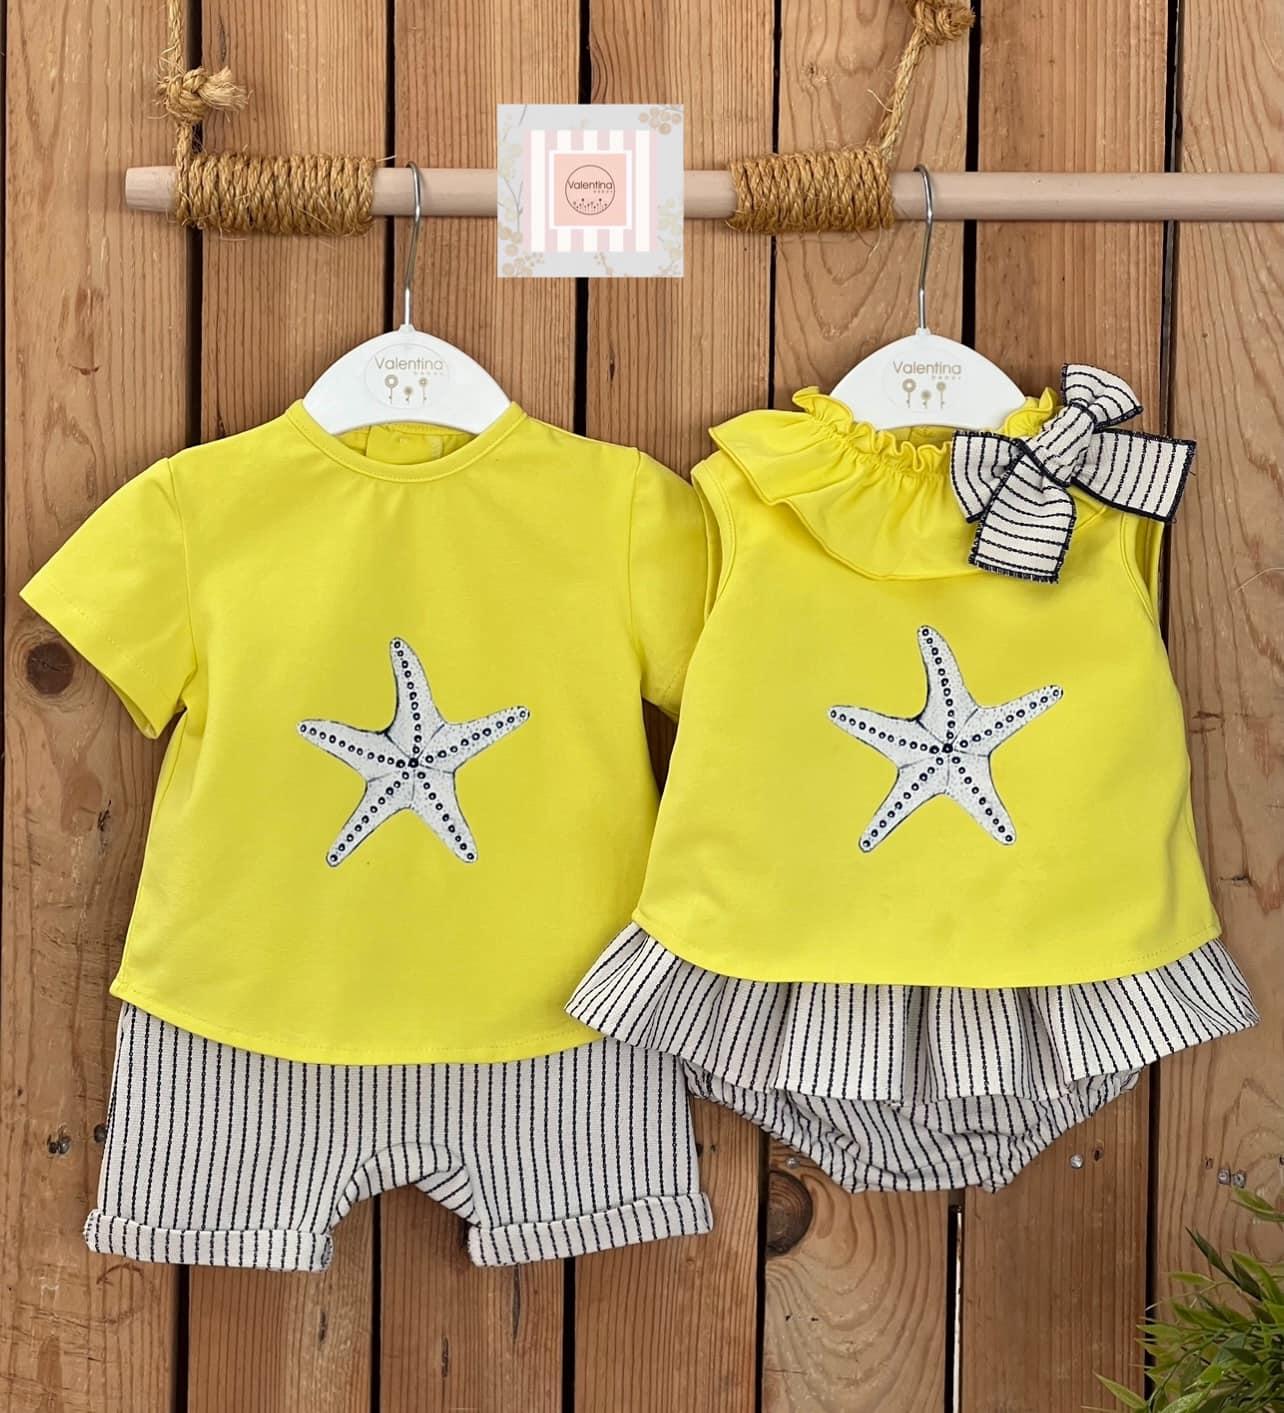 Valentina bebés - Conjunto 2 piezas camiseta estrella niño KTM234